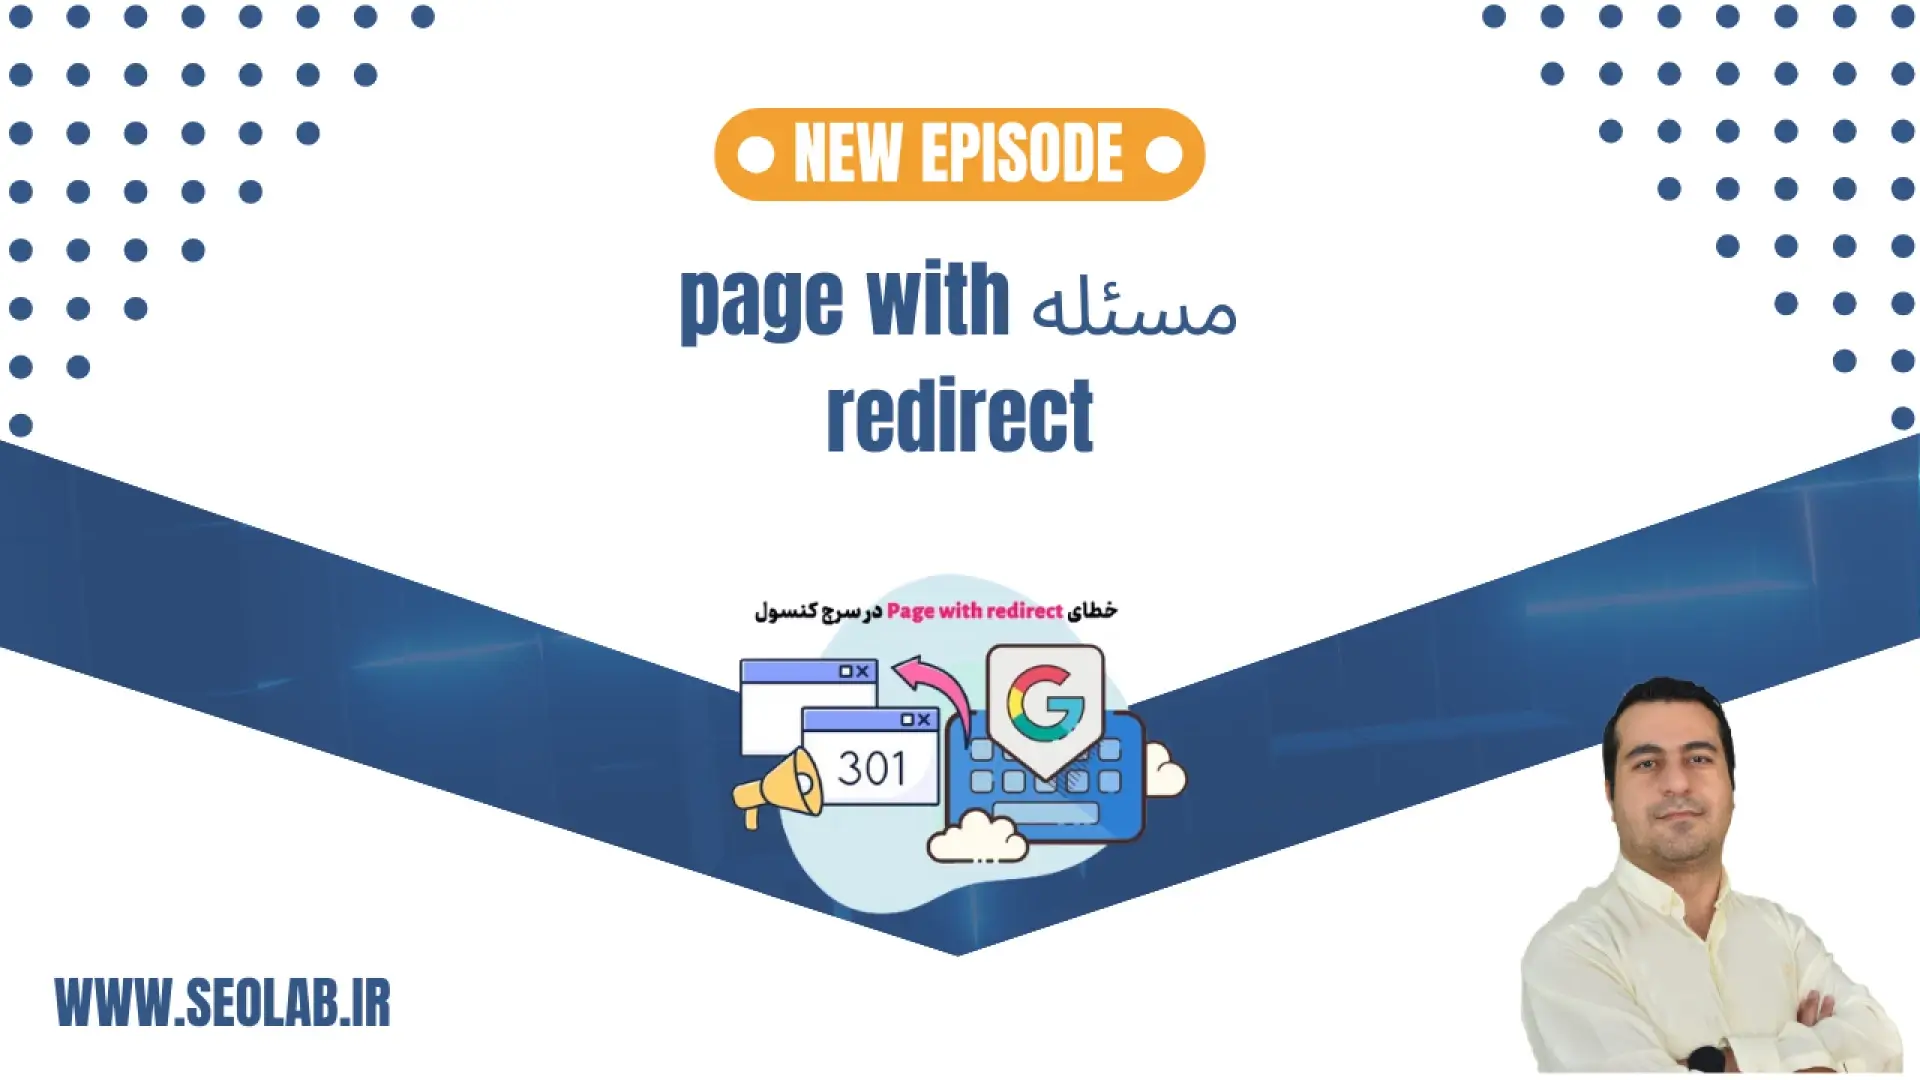 مسئله page with redirect